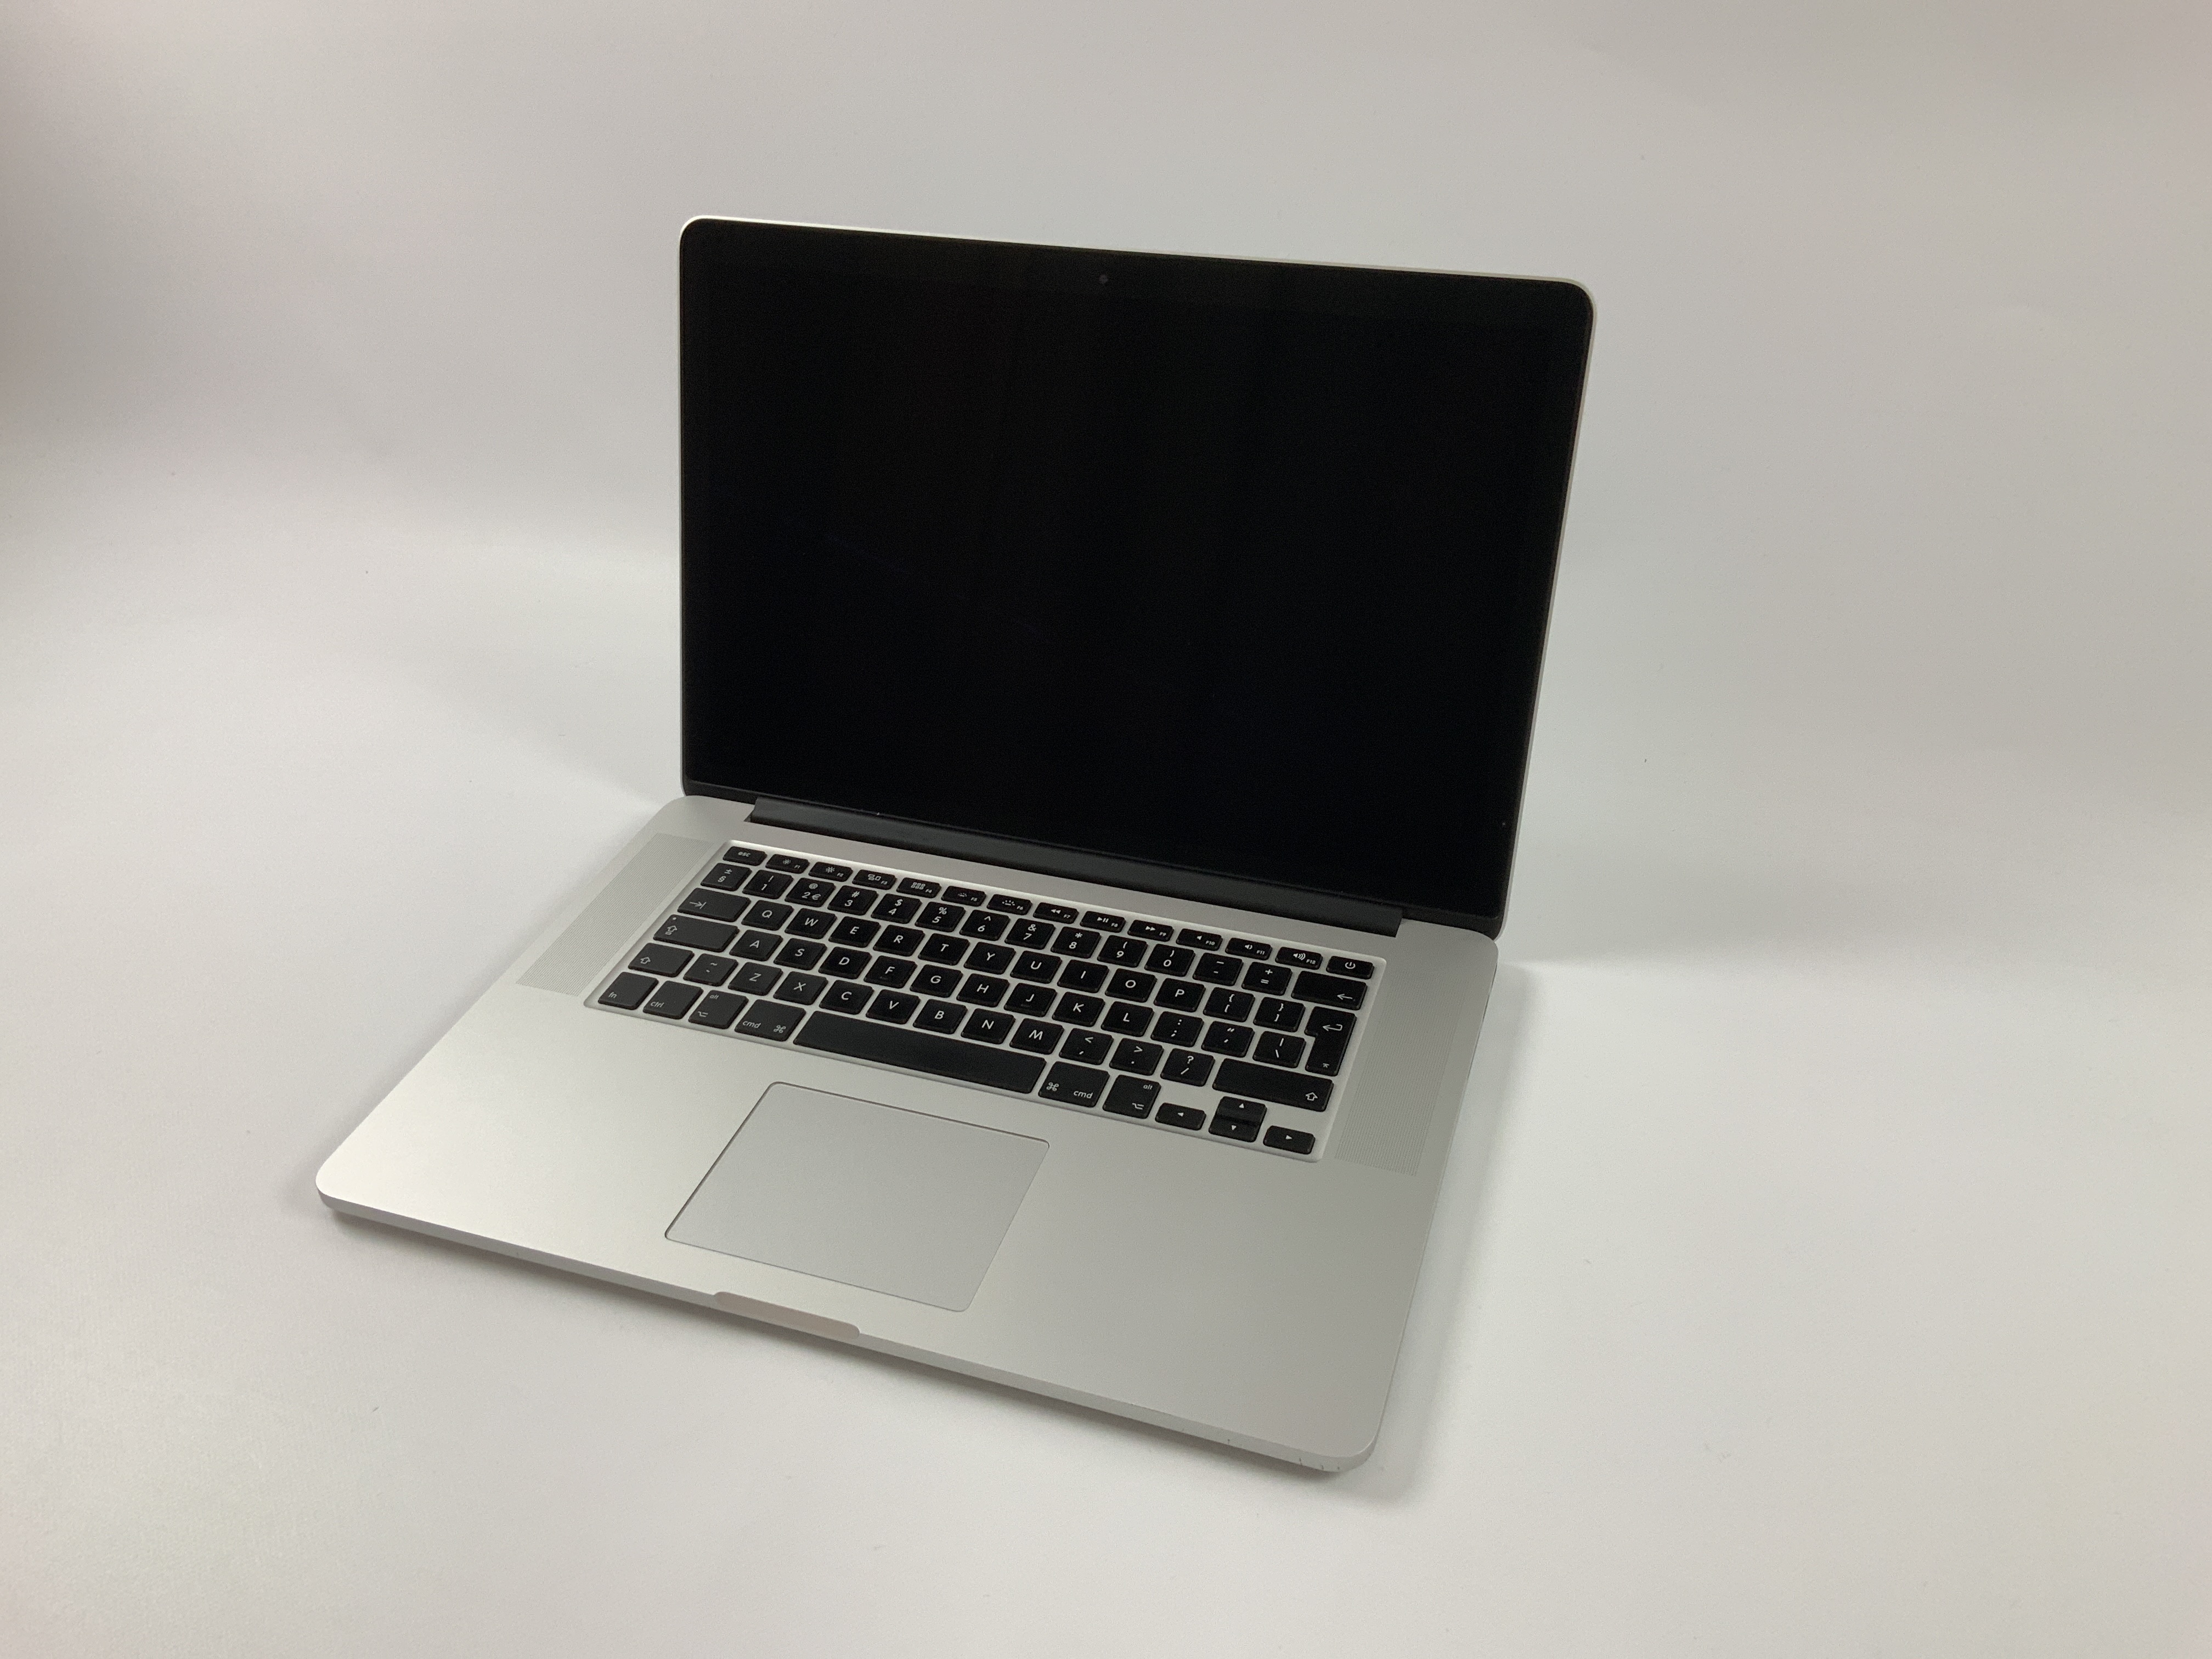 MacBook Pro Retina 15" Mid 2015 (Intel Quad-Core i7 2.5 GHz 16 GB RAM 256 GB SSD), Intel Quad-Core i7 2.5 GHz, 16 GB RAM, 256 GB SSD, obraz 1